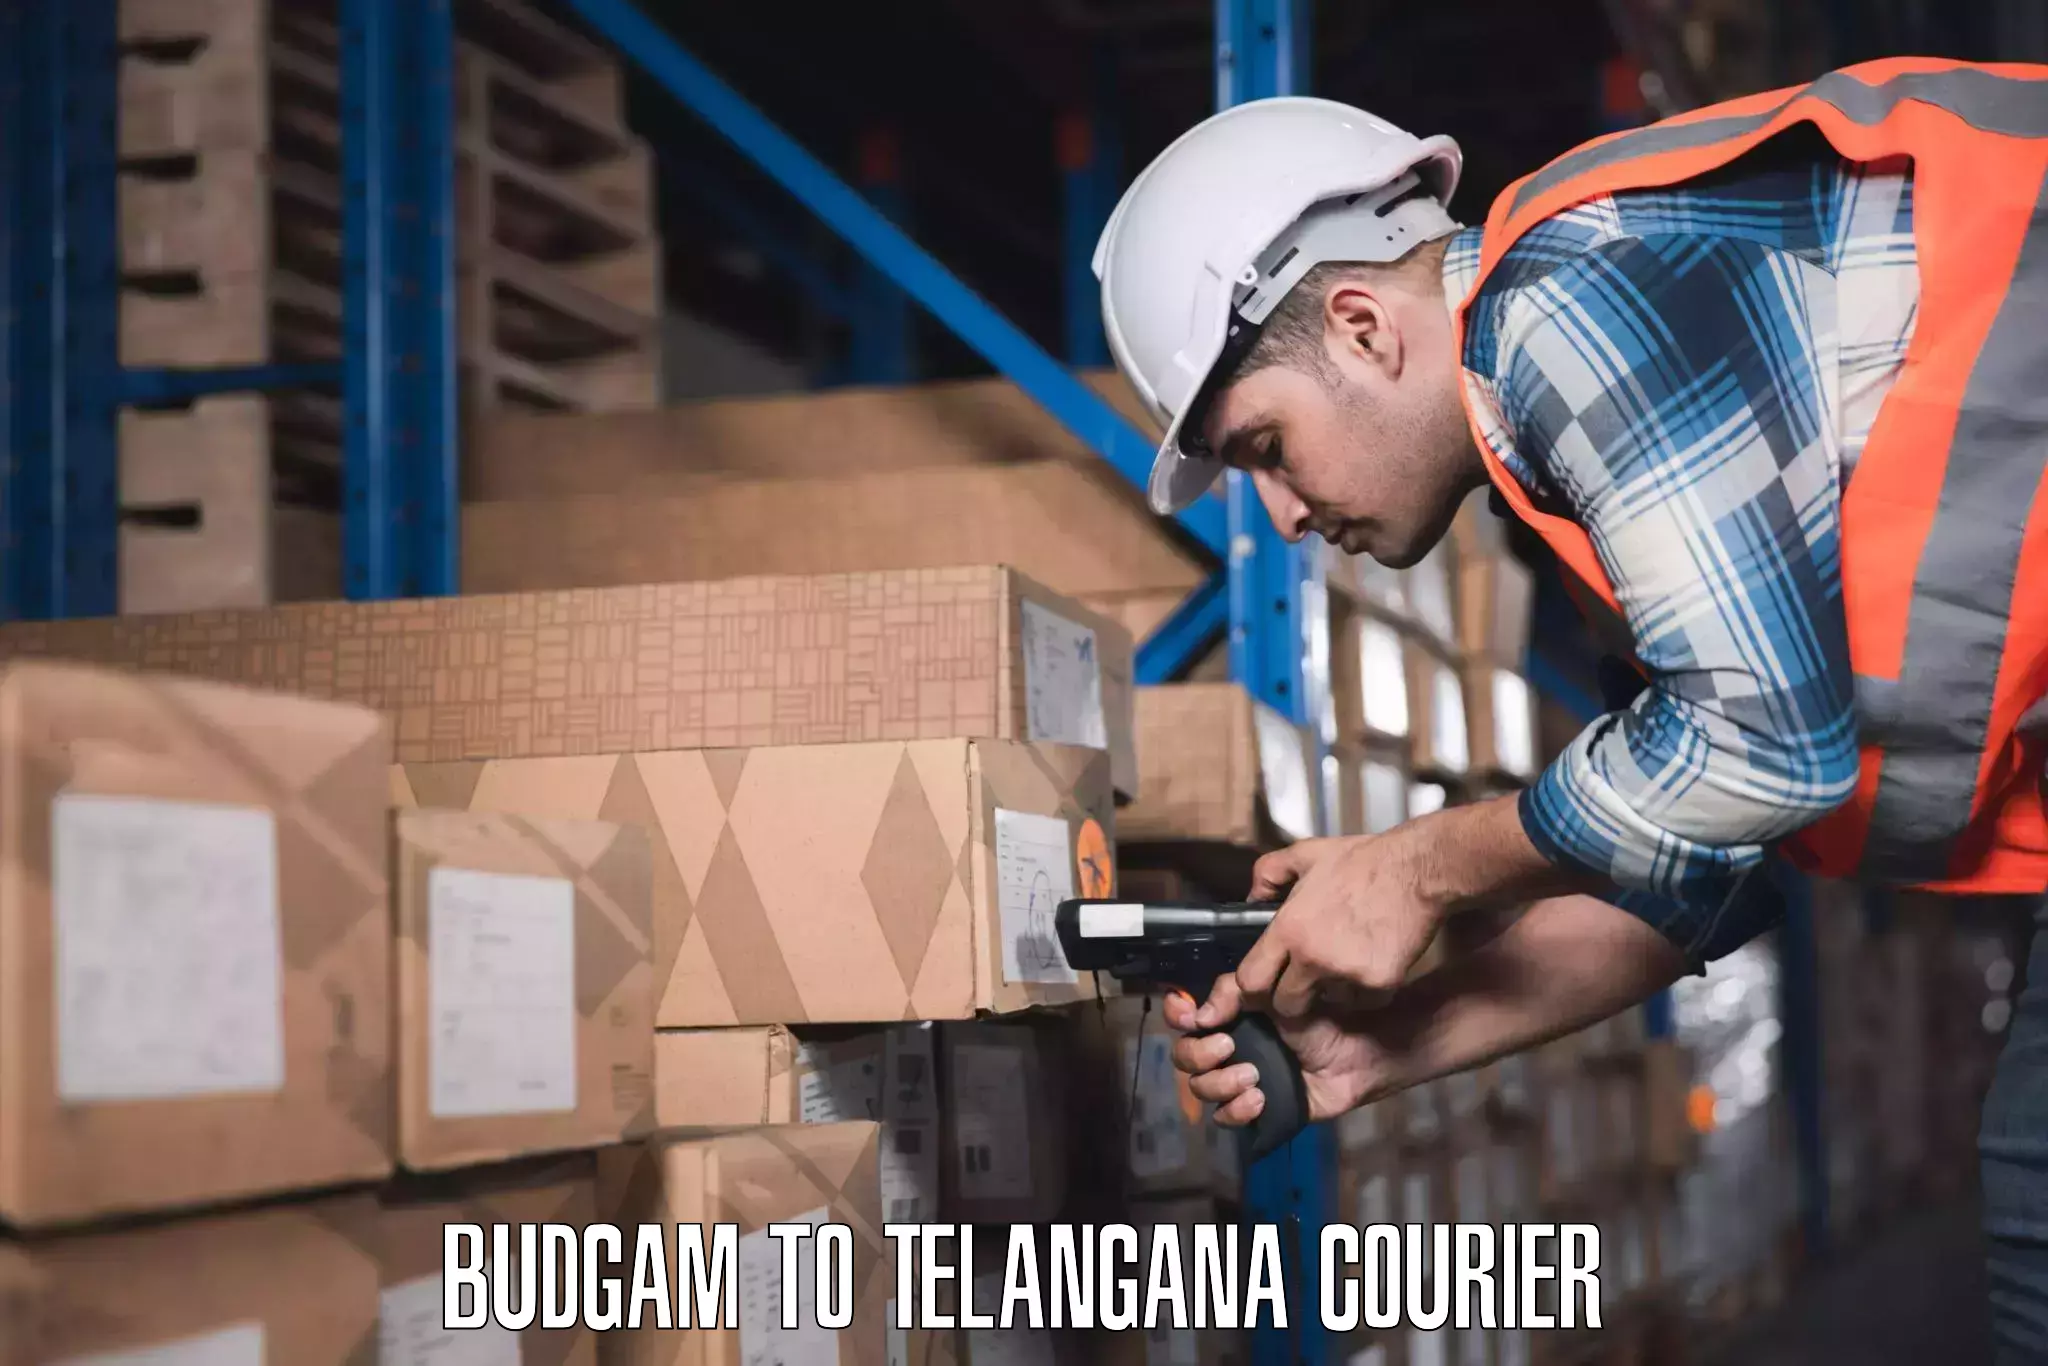 Baggage transport scheduler Budgam to Telangana